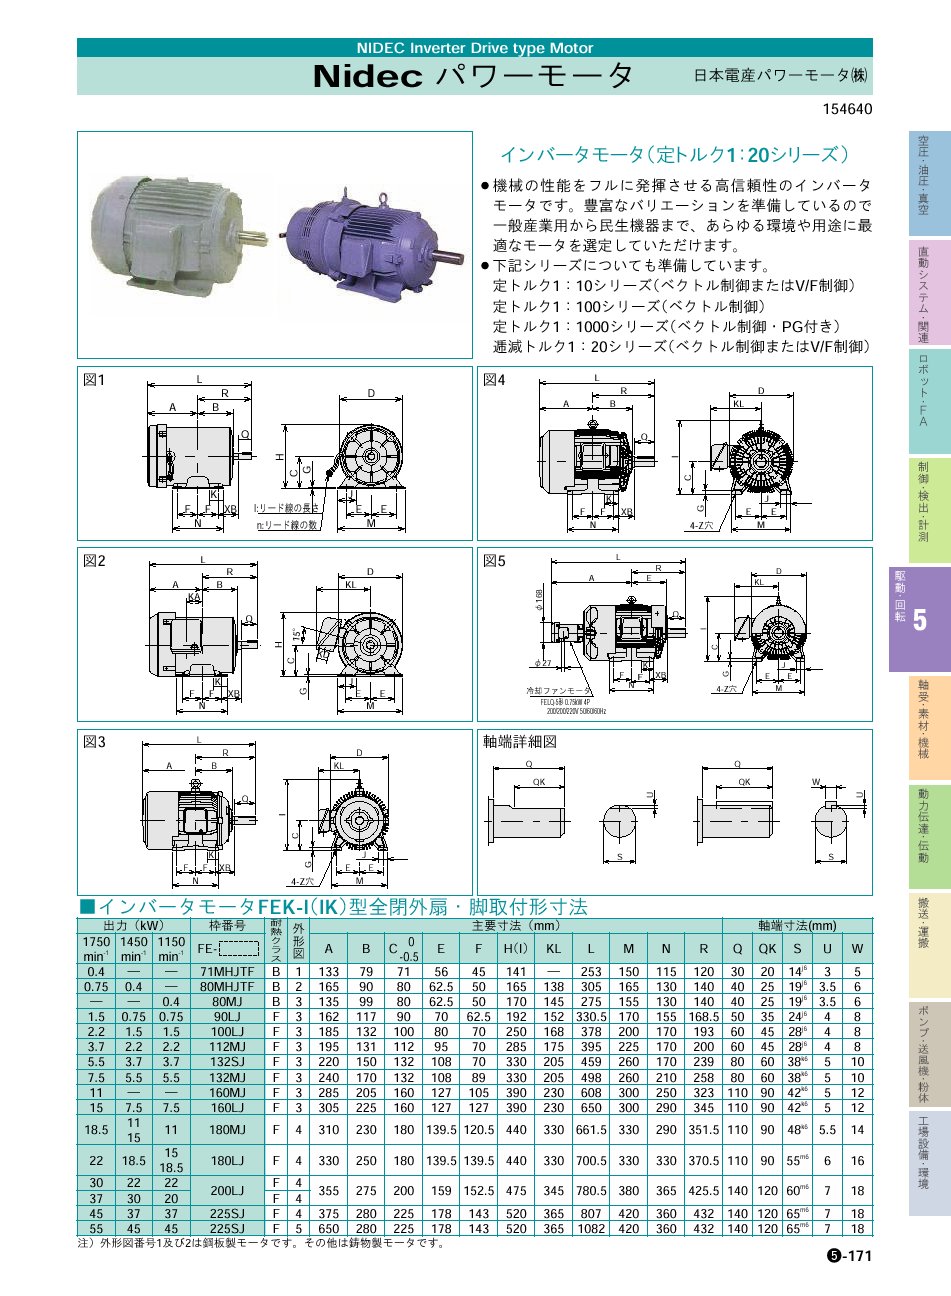 日本電産パワーモータ(株) インバータモータ P05-171 価格 駆動・回転制御機器